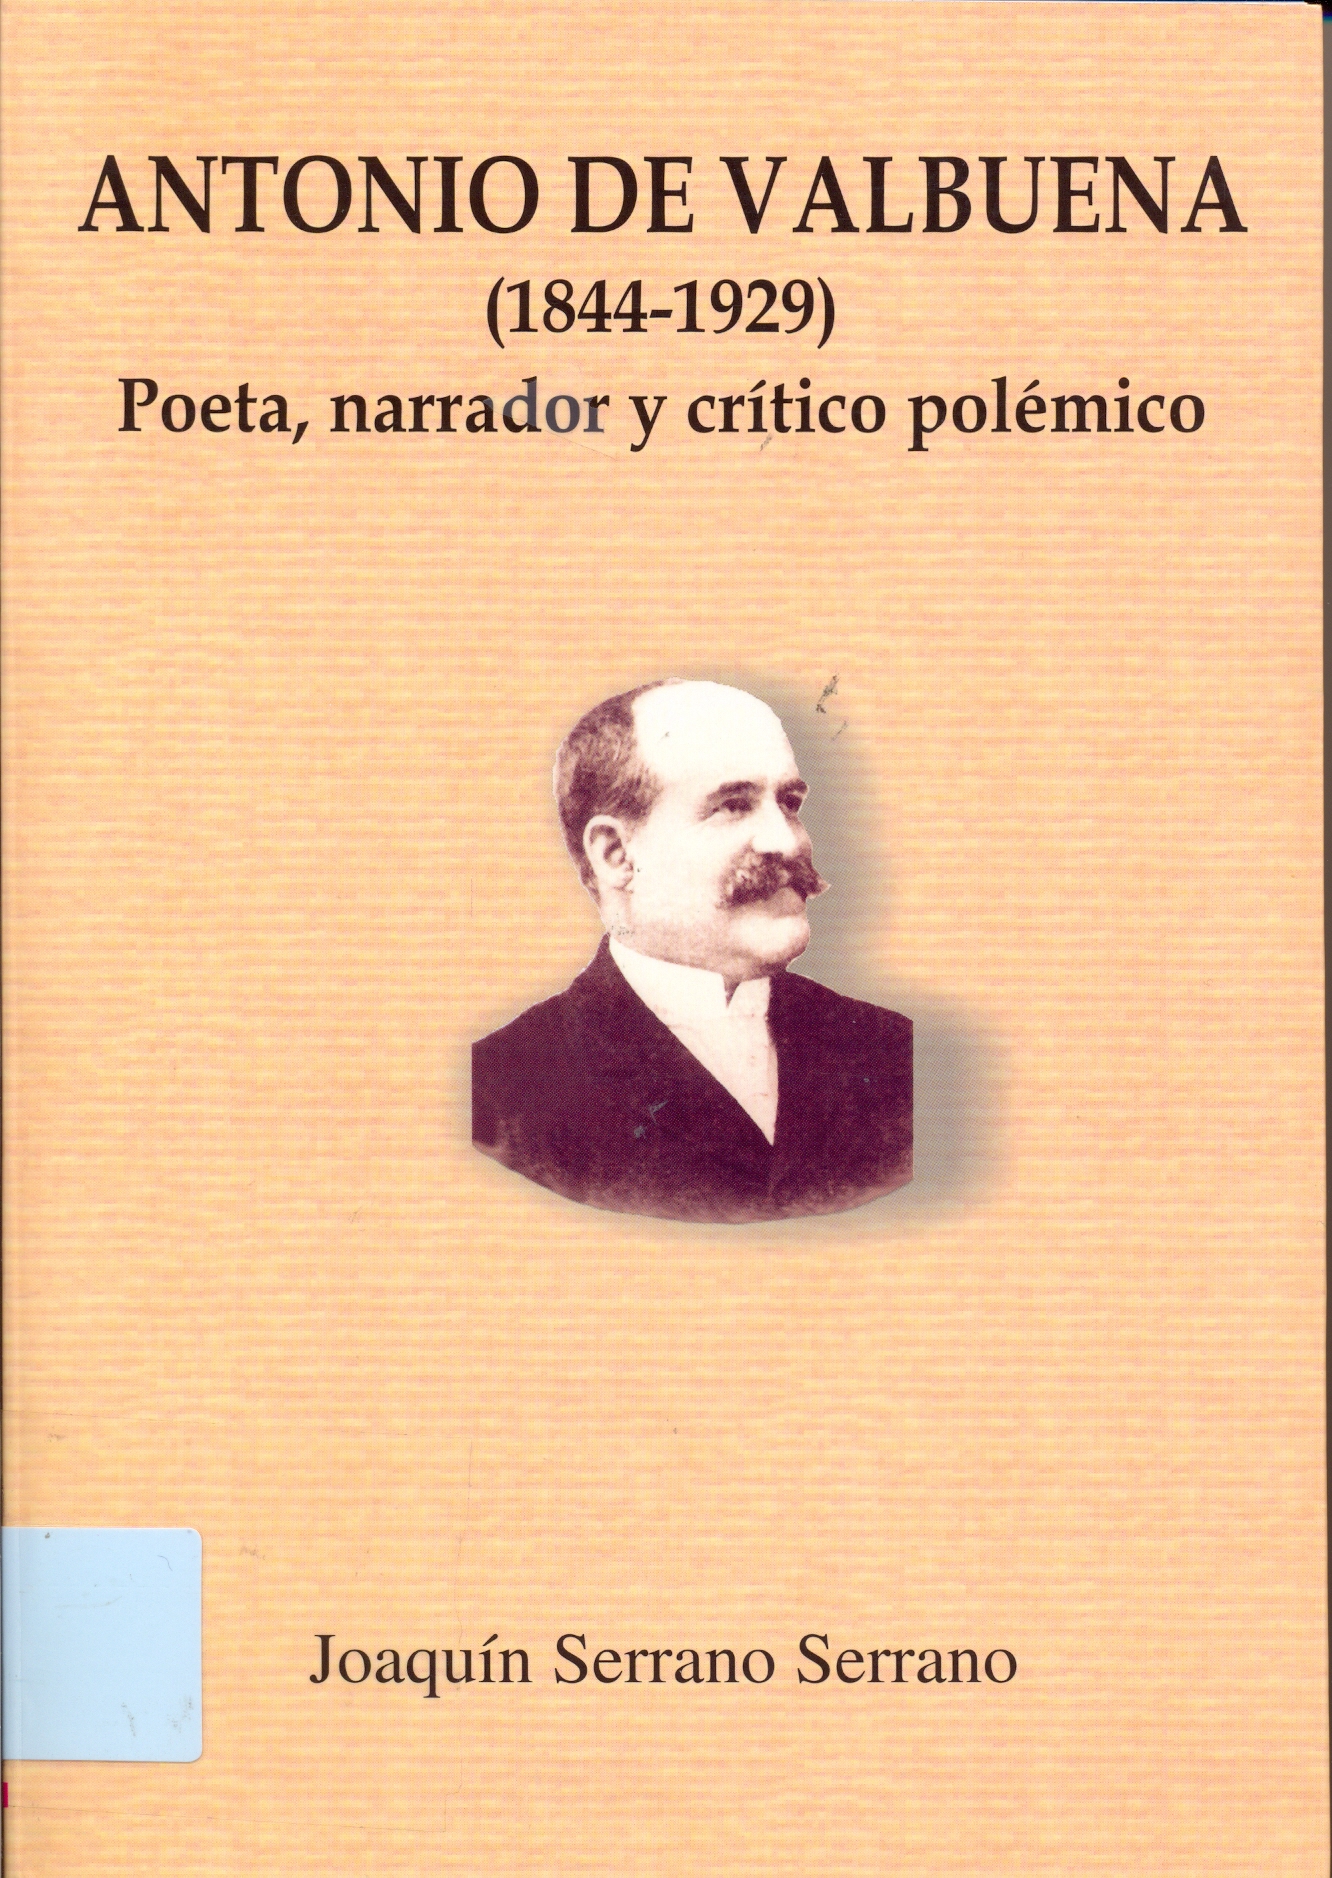 Imagen de portada del libro Antonio Valbuena (1844-1929)